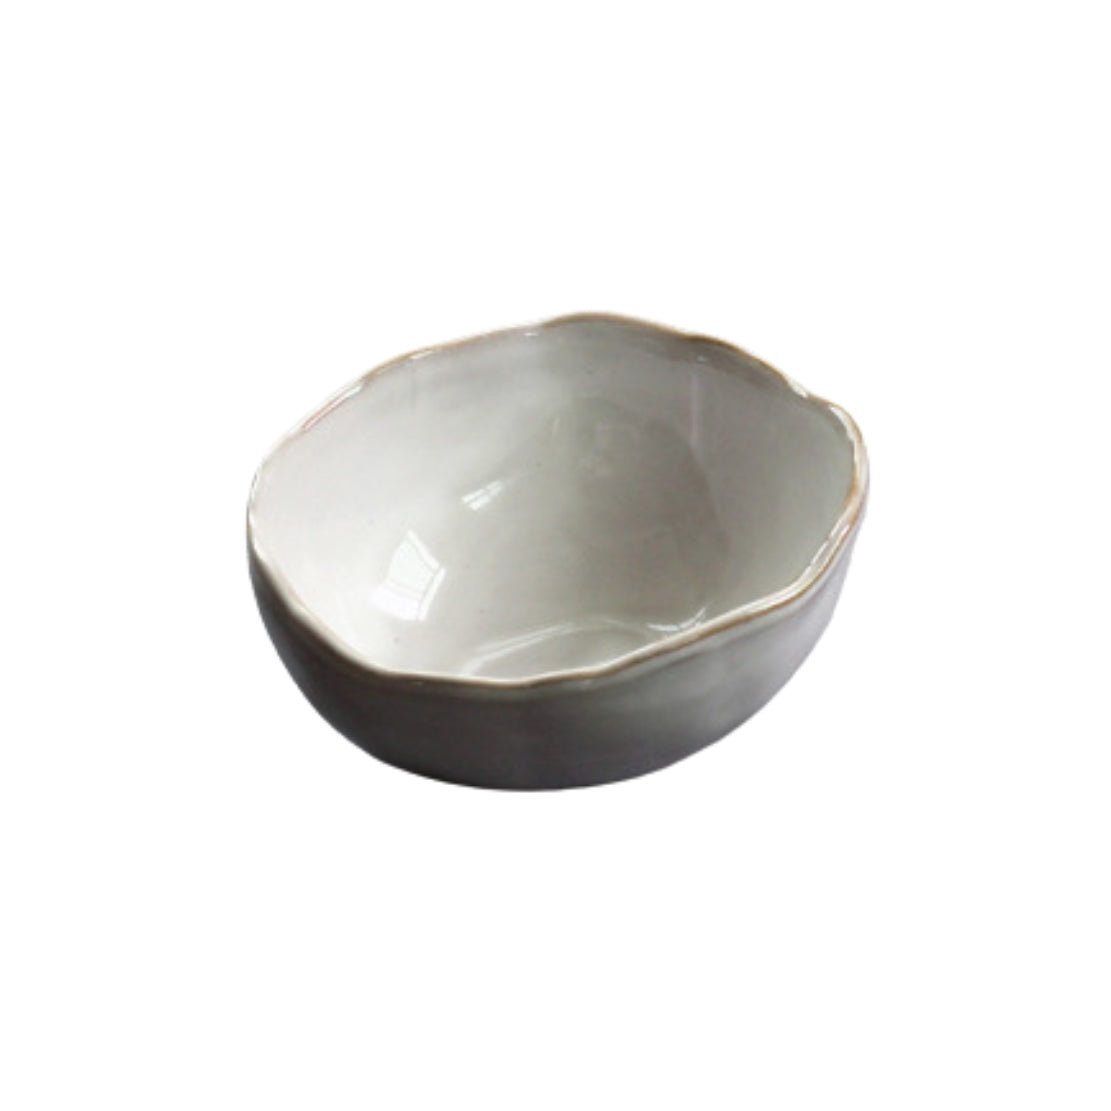 White asymmetrical bowl